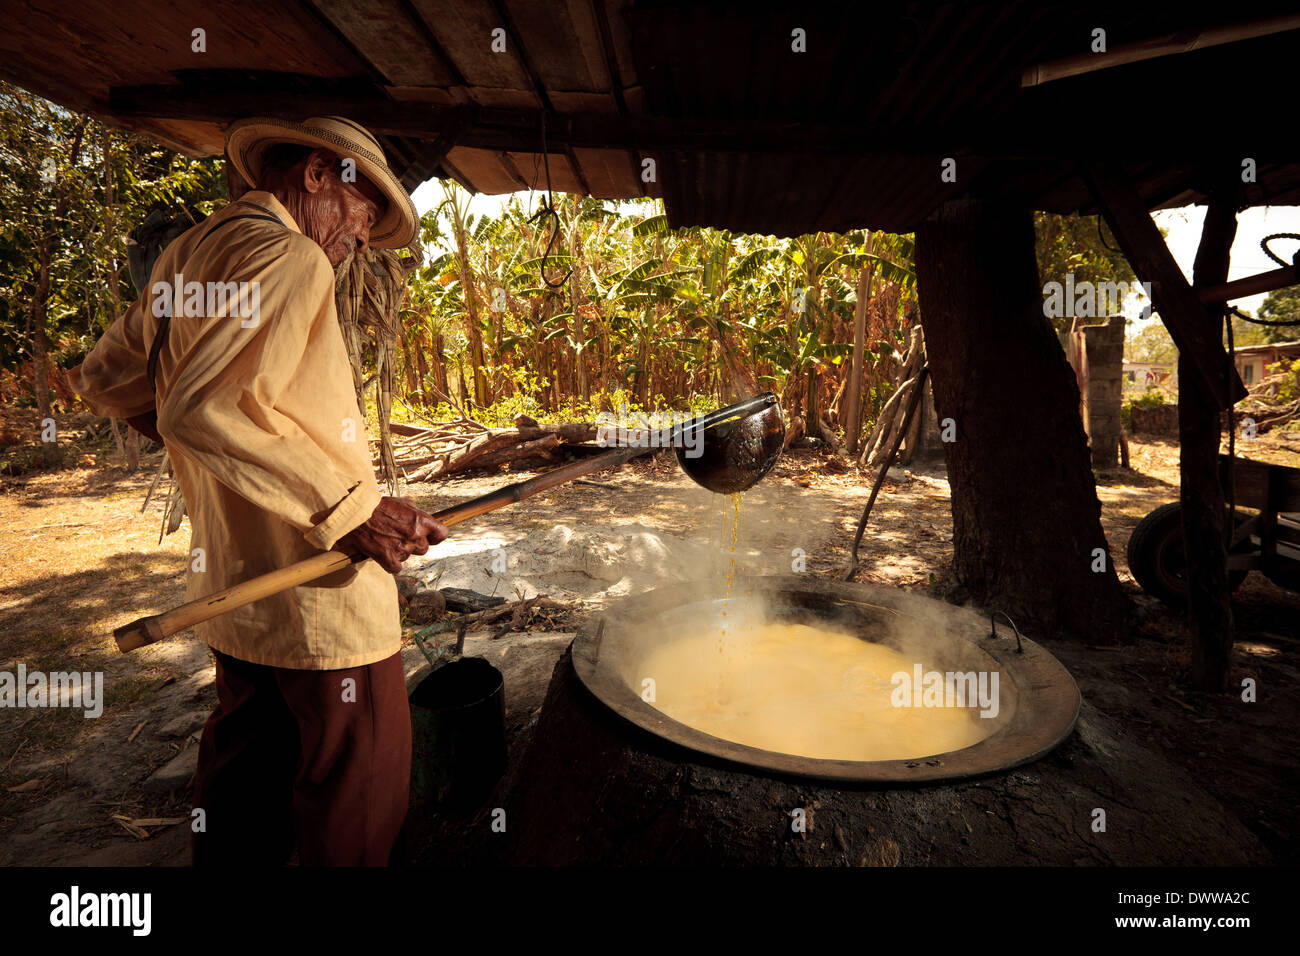 Moises Ibarra boils spremuta di canna da zucchero per fare il raspadura, una torta di zucchero, nella provincia di Cocle, Repubblica di Panama, America Centrale. Foto Stock